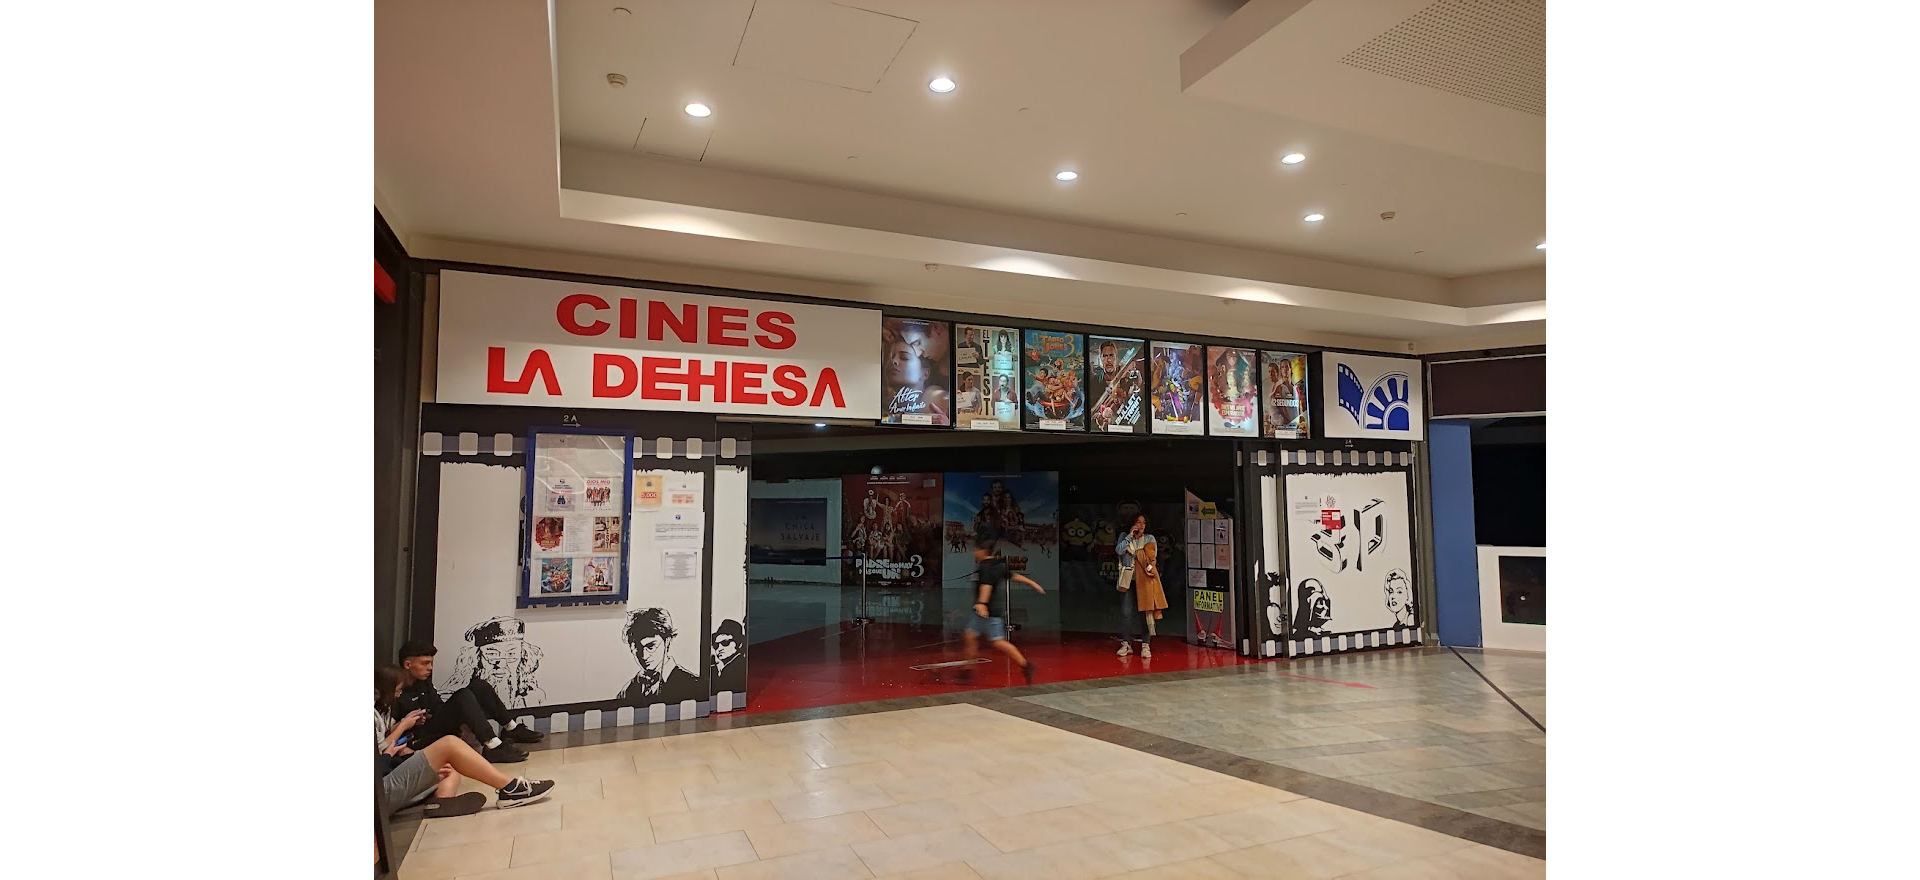 Vuelve la Fiesta del Cine a Ponferrada a un precio de 3,50€ por entrada 1